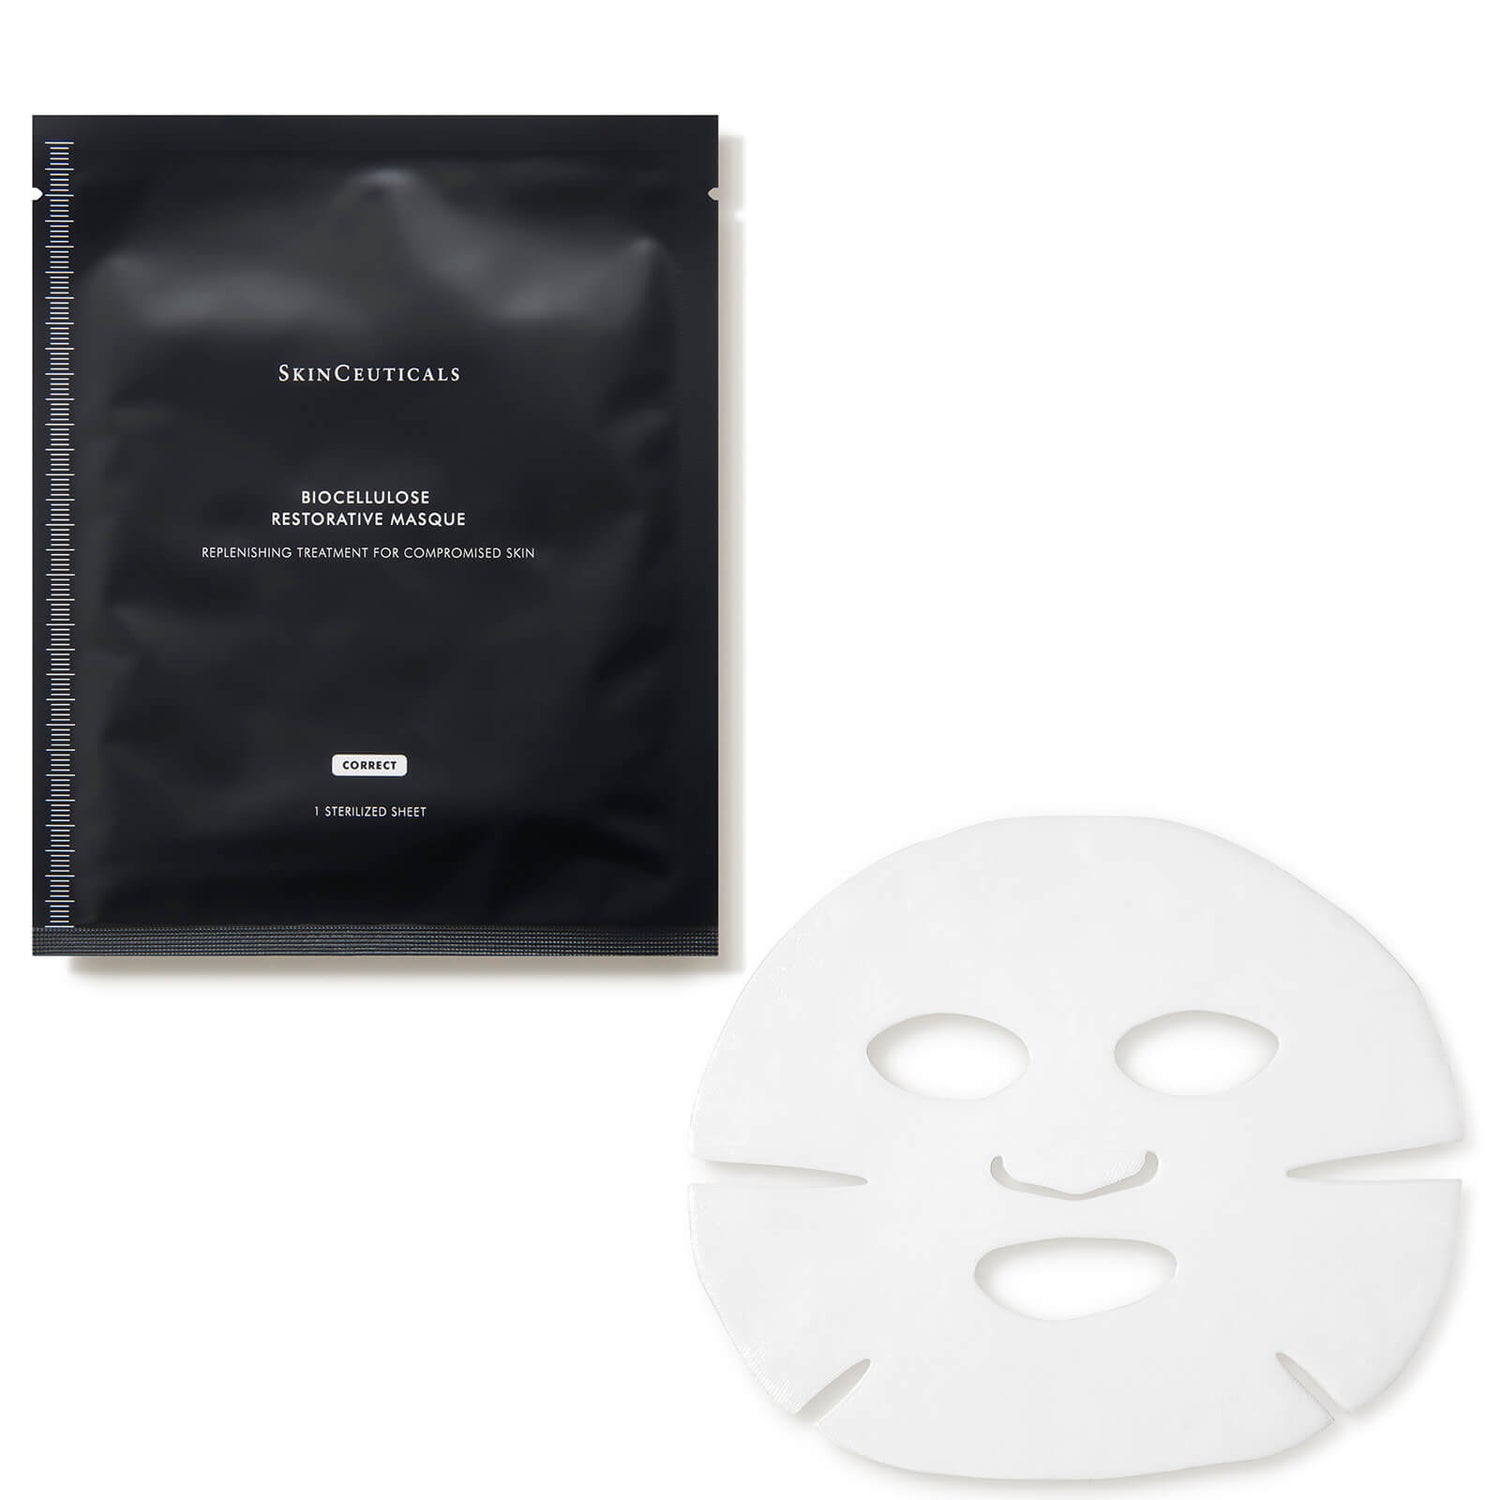 SkinCeuticals Biocellulose Restorative Mask (6 piece)